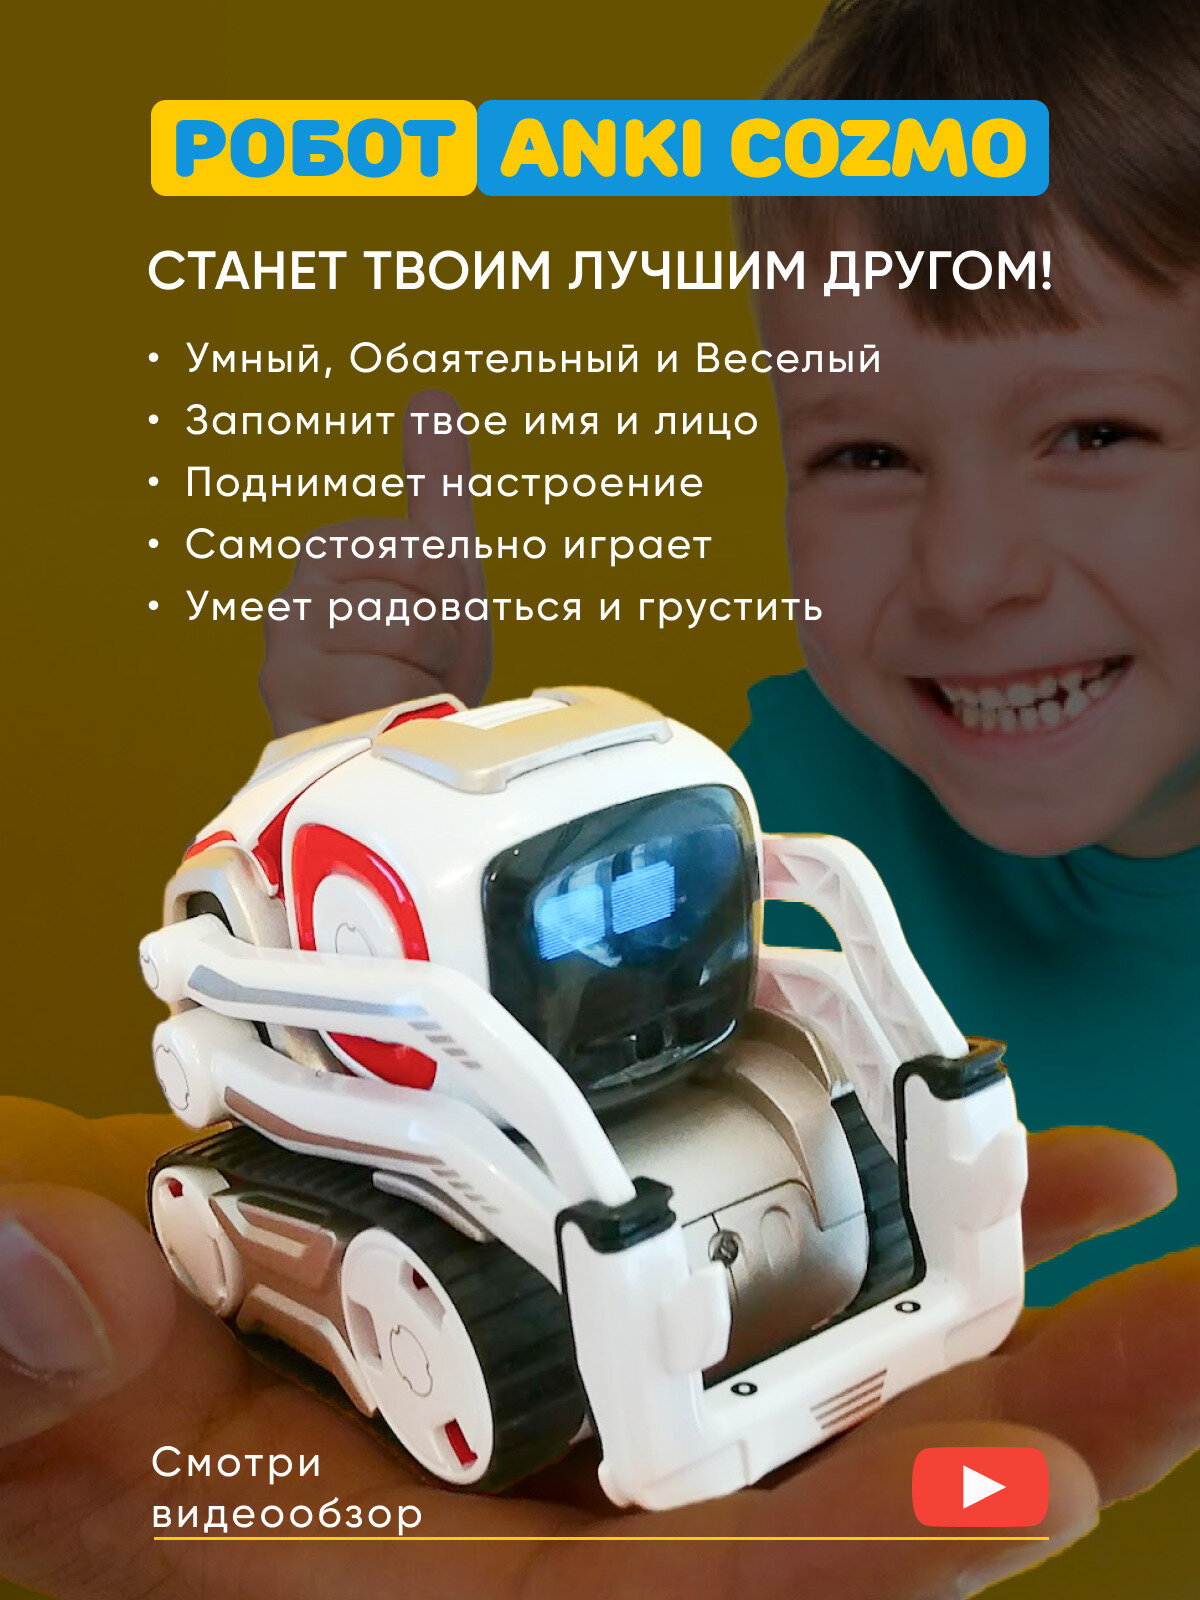 Робот на пульте управления anki cozmo robot renewed. Игрушка домашний питомец компаньон Анки Козмо с искусcтвенным интеллектом.